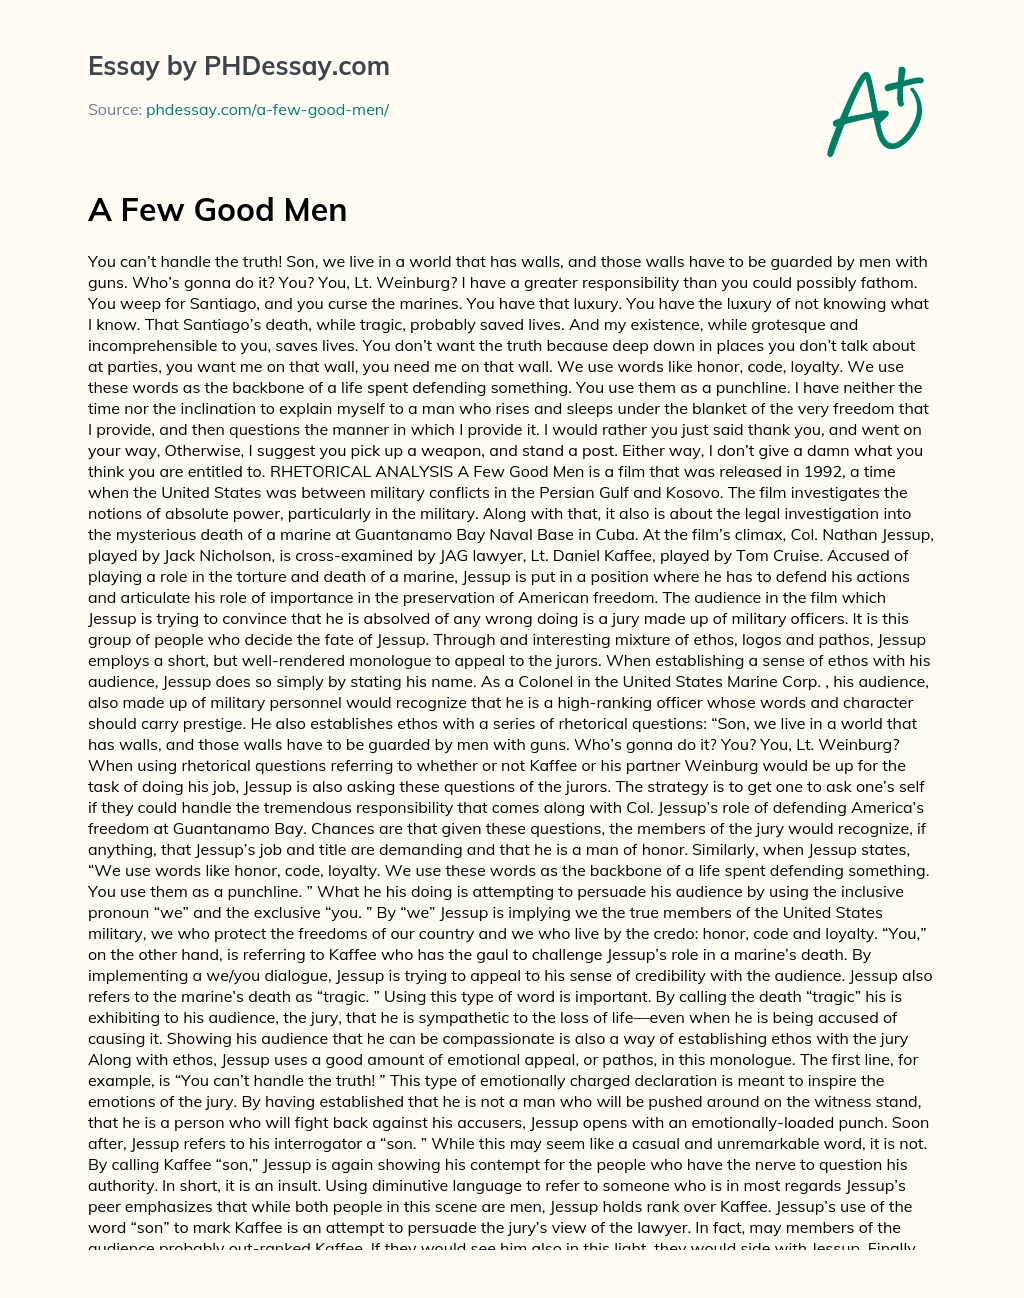 A Few Good Men essay